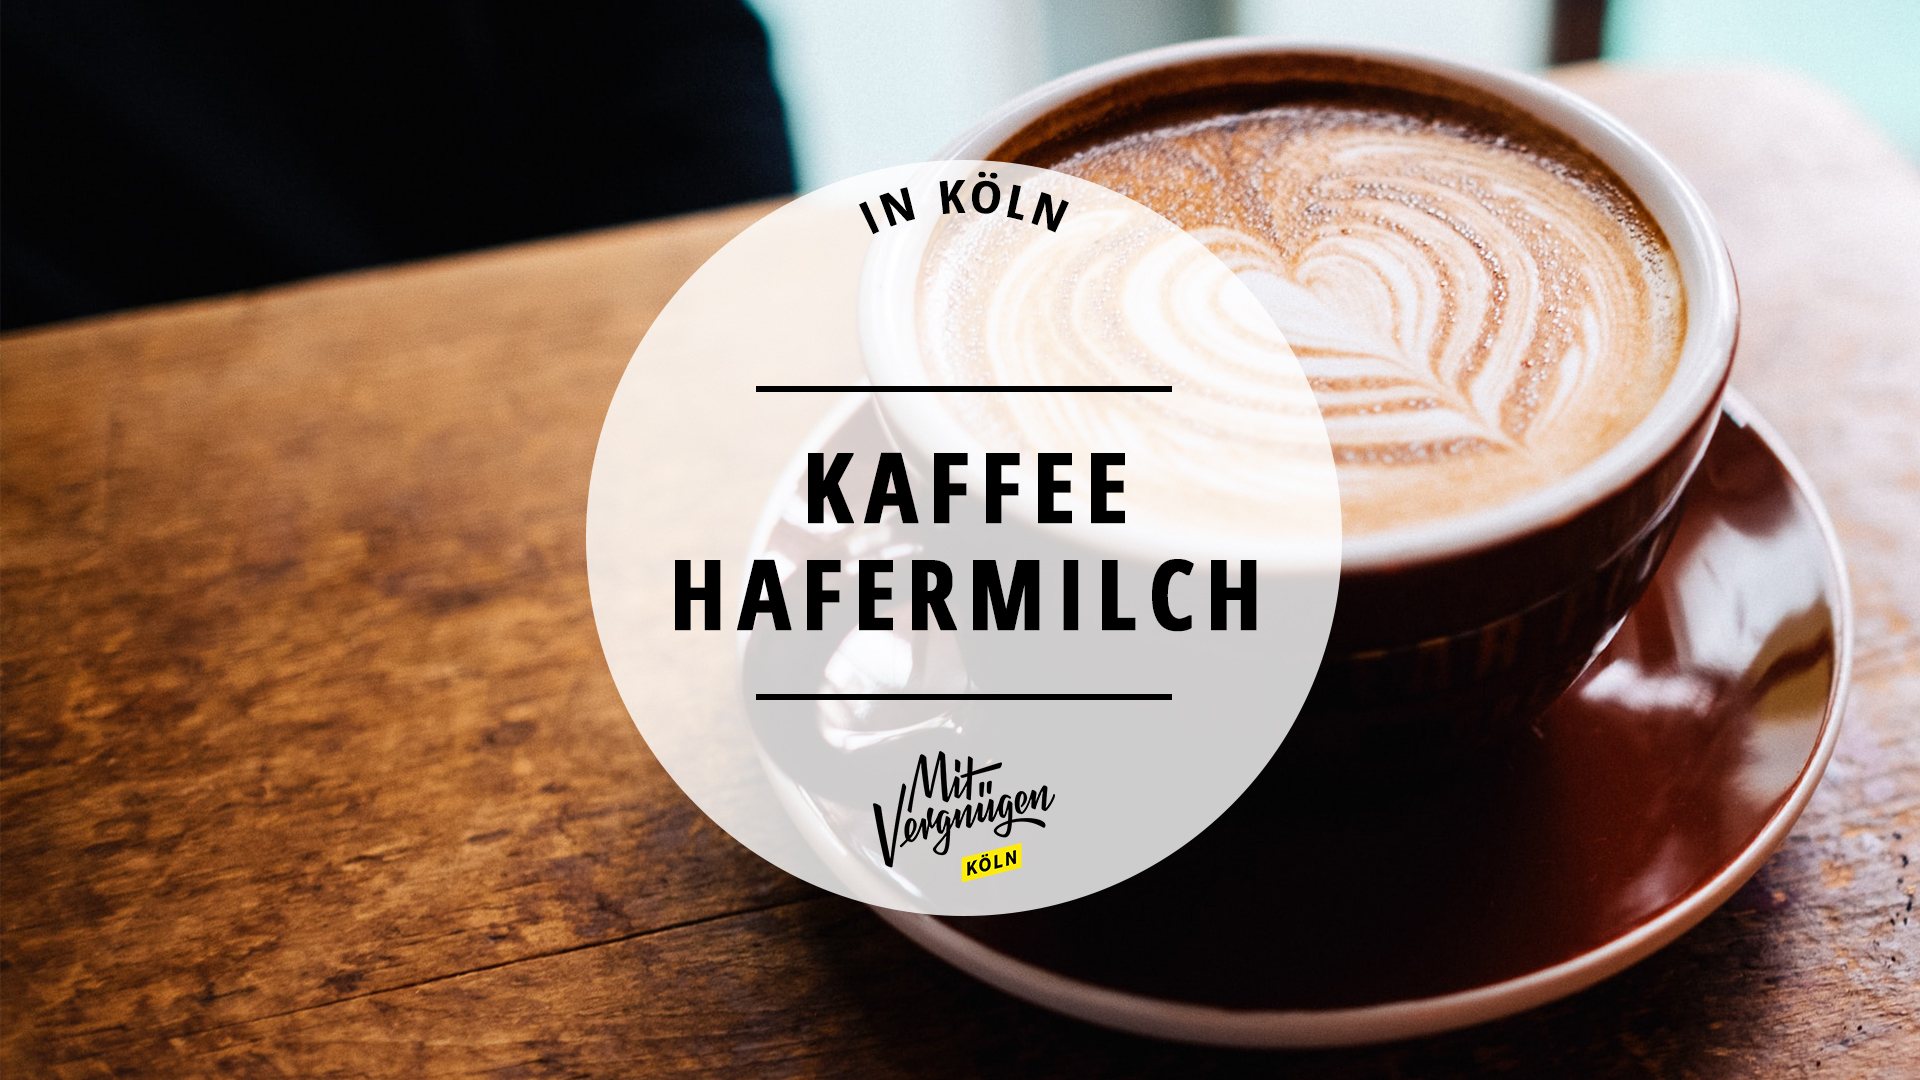 #11 Cafés in Köln, wo ihr für Hafermilch keinen Aufpreis zahlen müsst